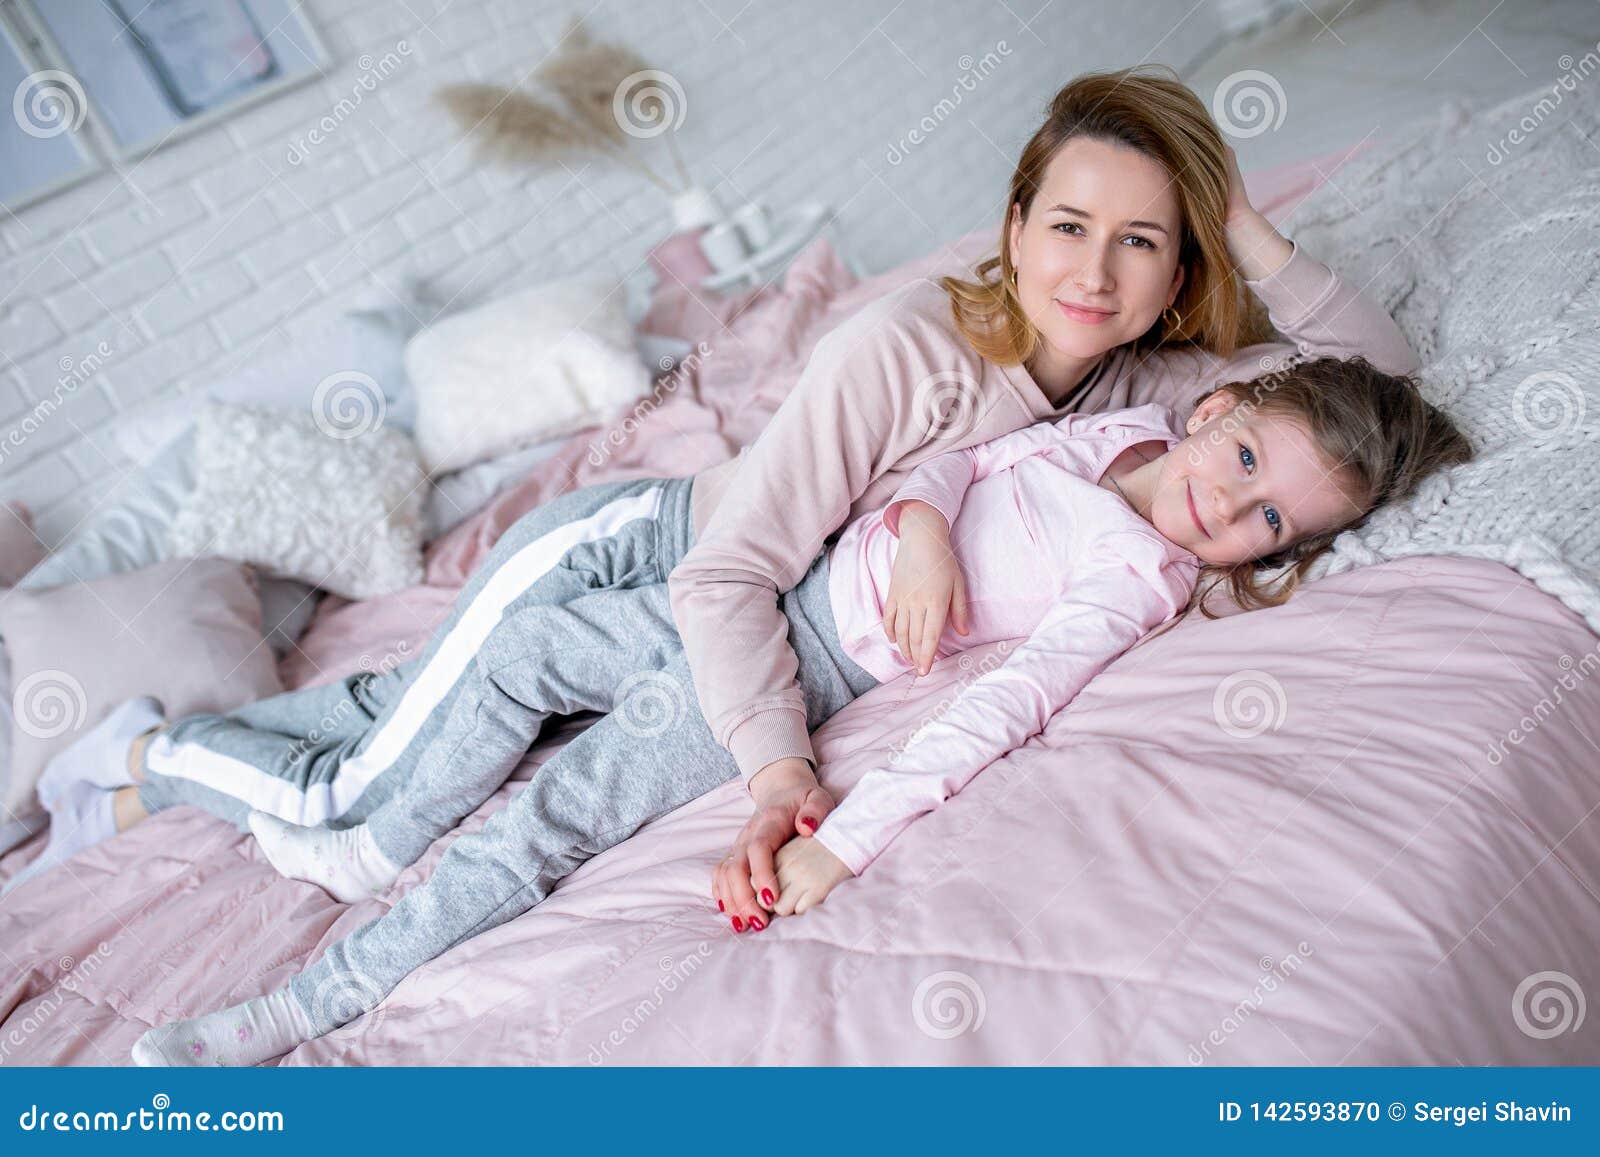 Мама лежит дочки. Мама с дочкой лежат на кровати. Фотосессия мама и дочь в спальне. Дочка лежит на маме. Мама с дочкой фотосессия на кровати.